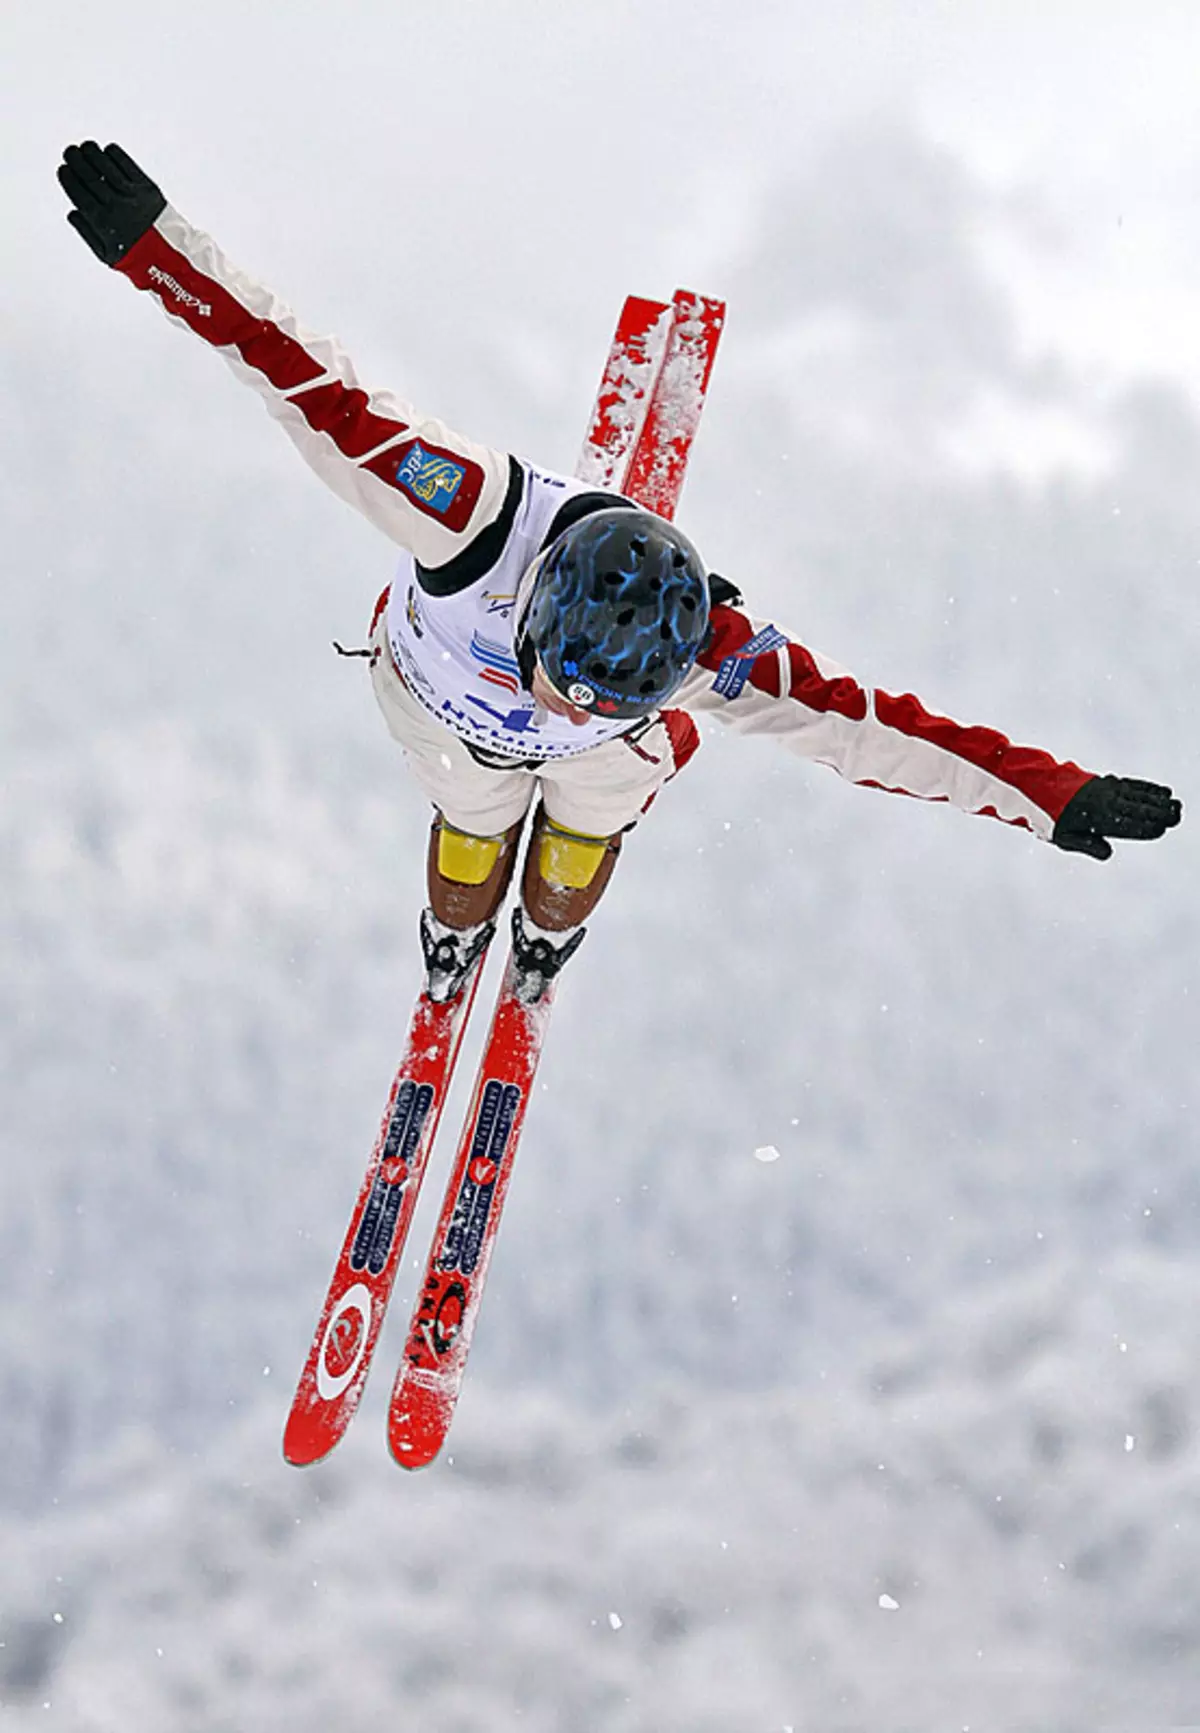 Skihandsker (61 billeder): Kvinders ski modeller til sport, oversigt over populære mærker - Reysshe, Head, Salomon, Leki 15203_23